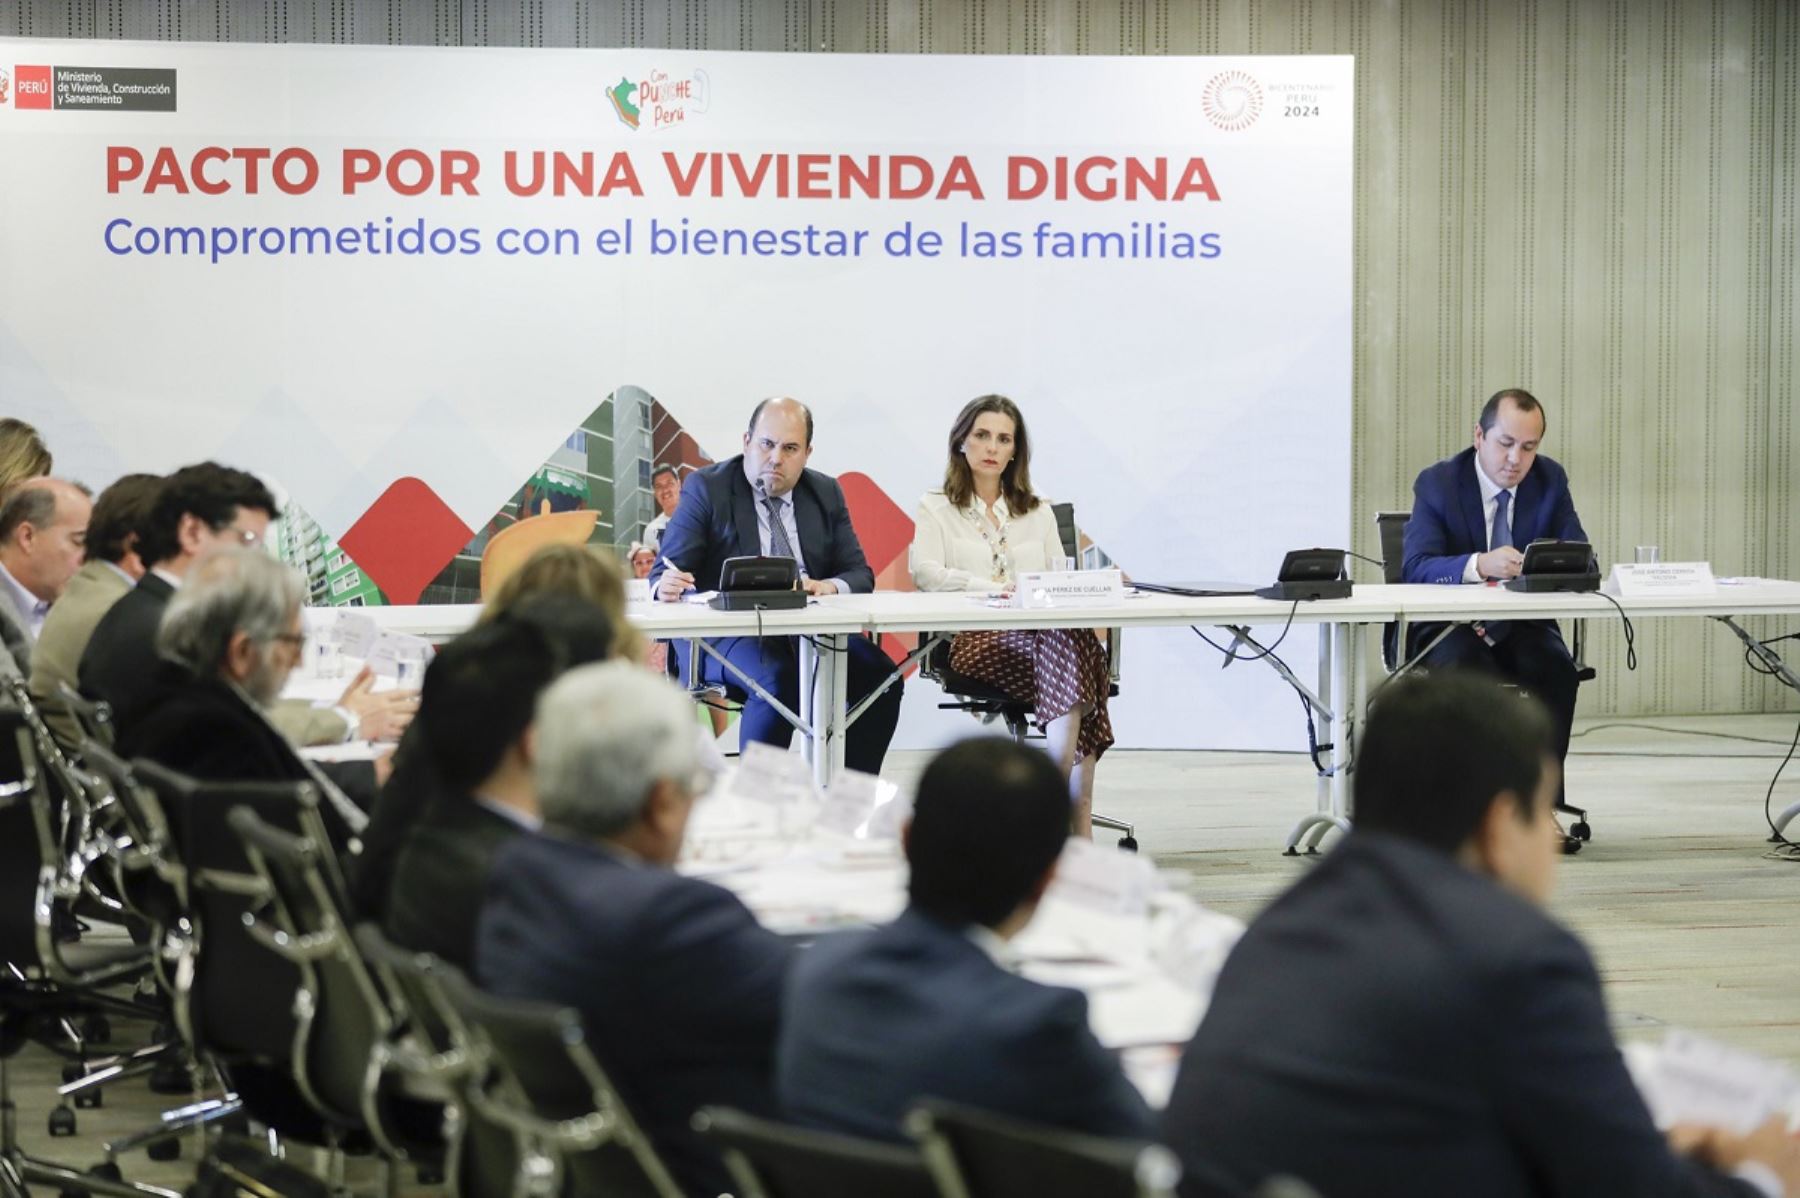 Ministra de Vivienda, Construcción y Saneamiento, Hania Pérez de Cuéllar, participó en la firma del "Pacto por una Vivienda Digna". Foto: Cortesía.